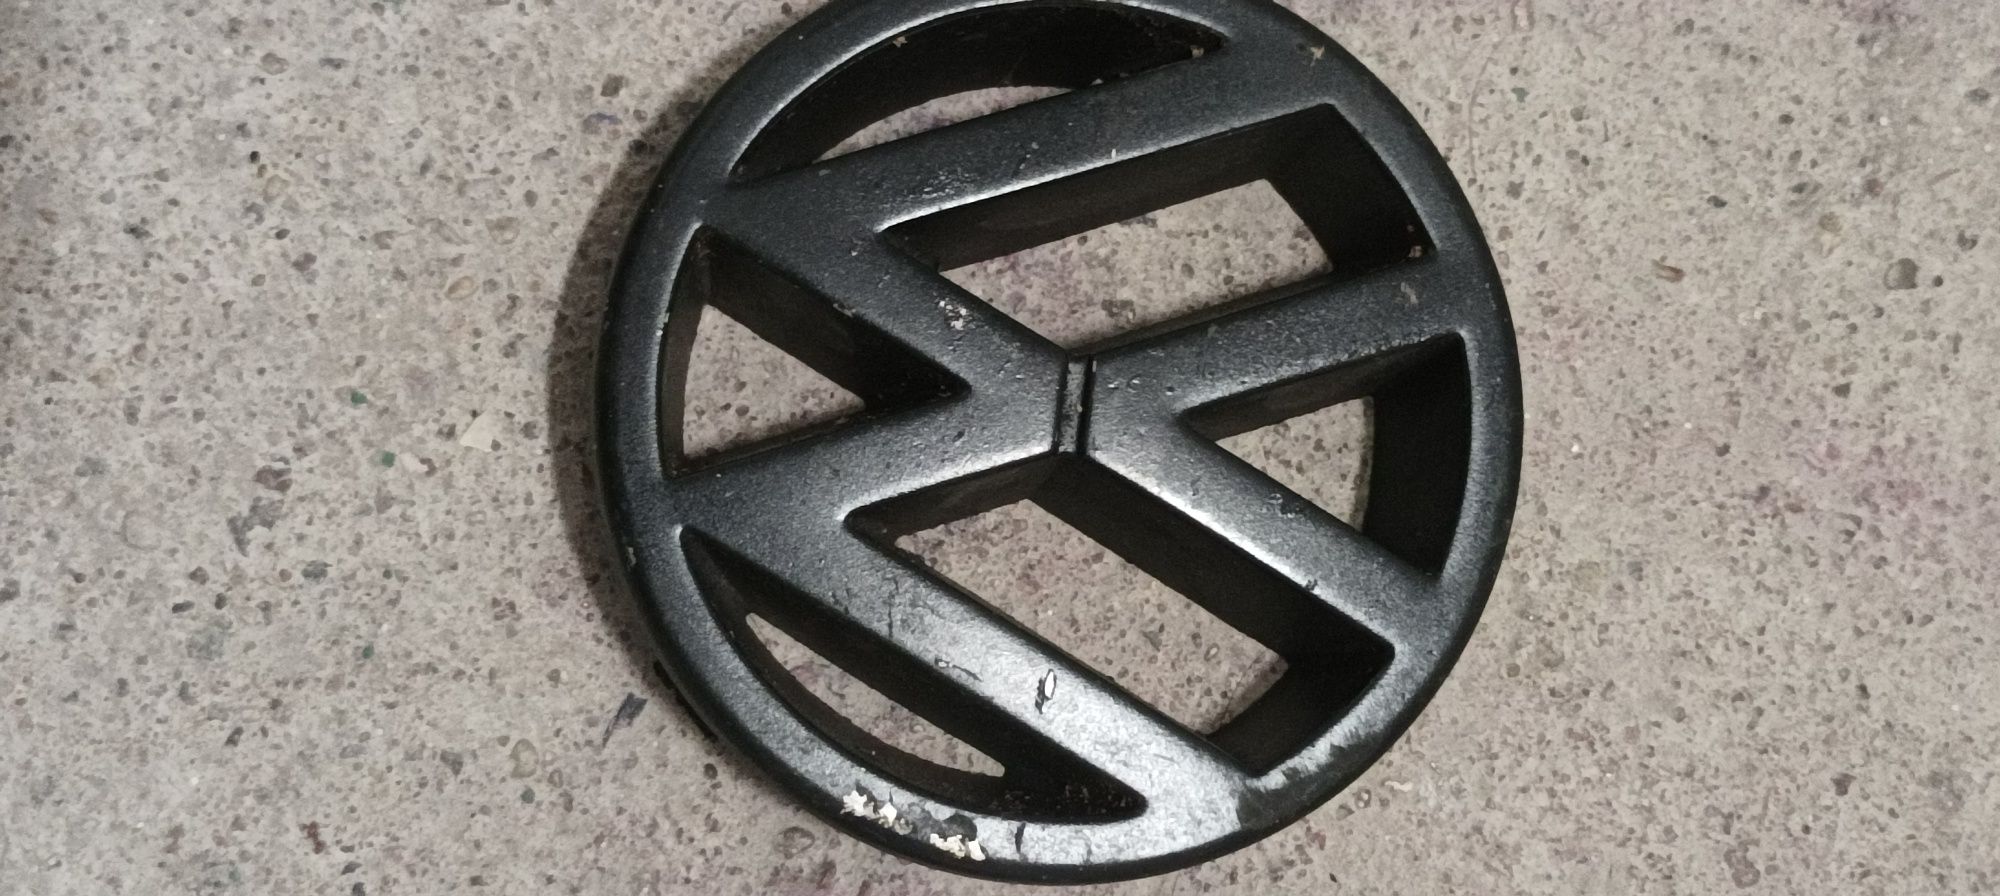 Znaczek , emblemat VW